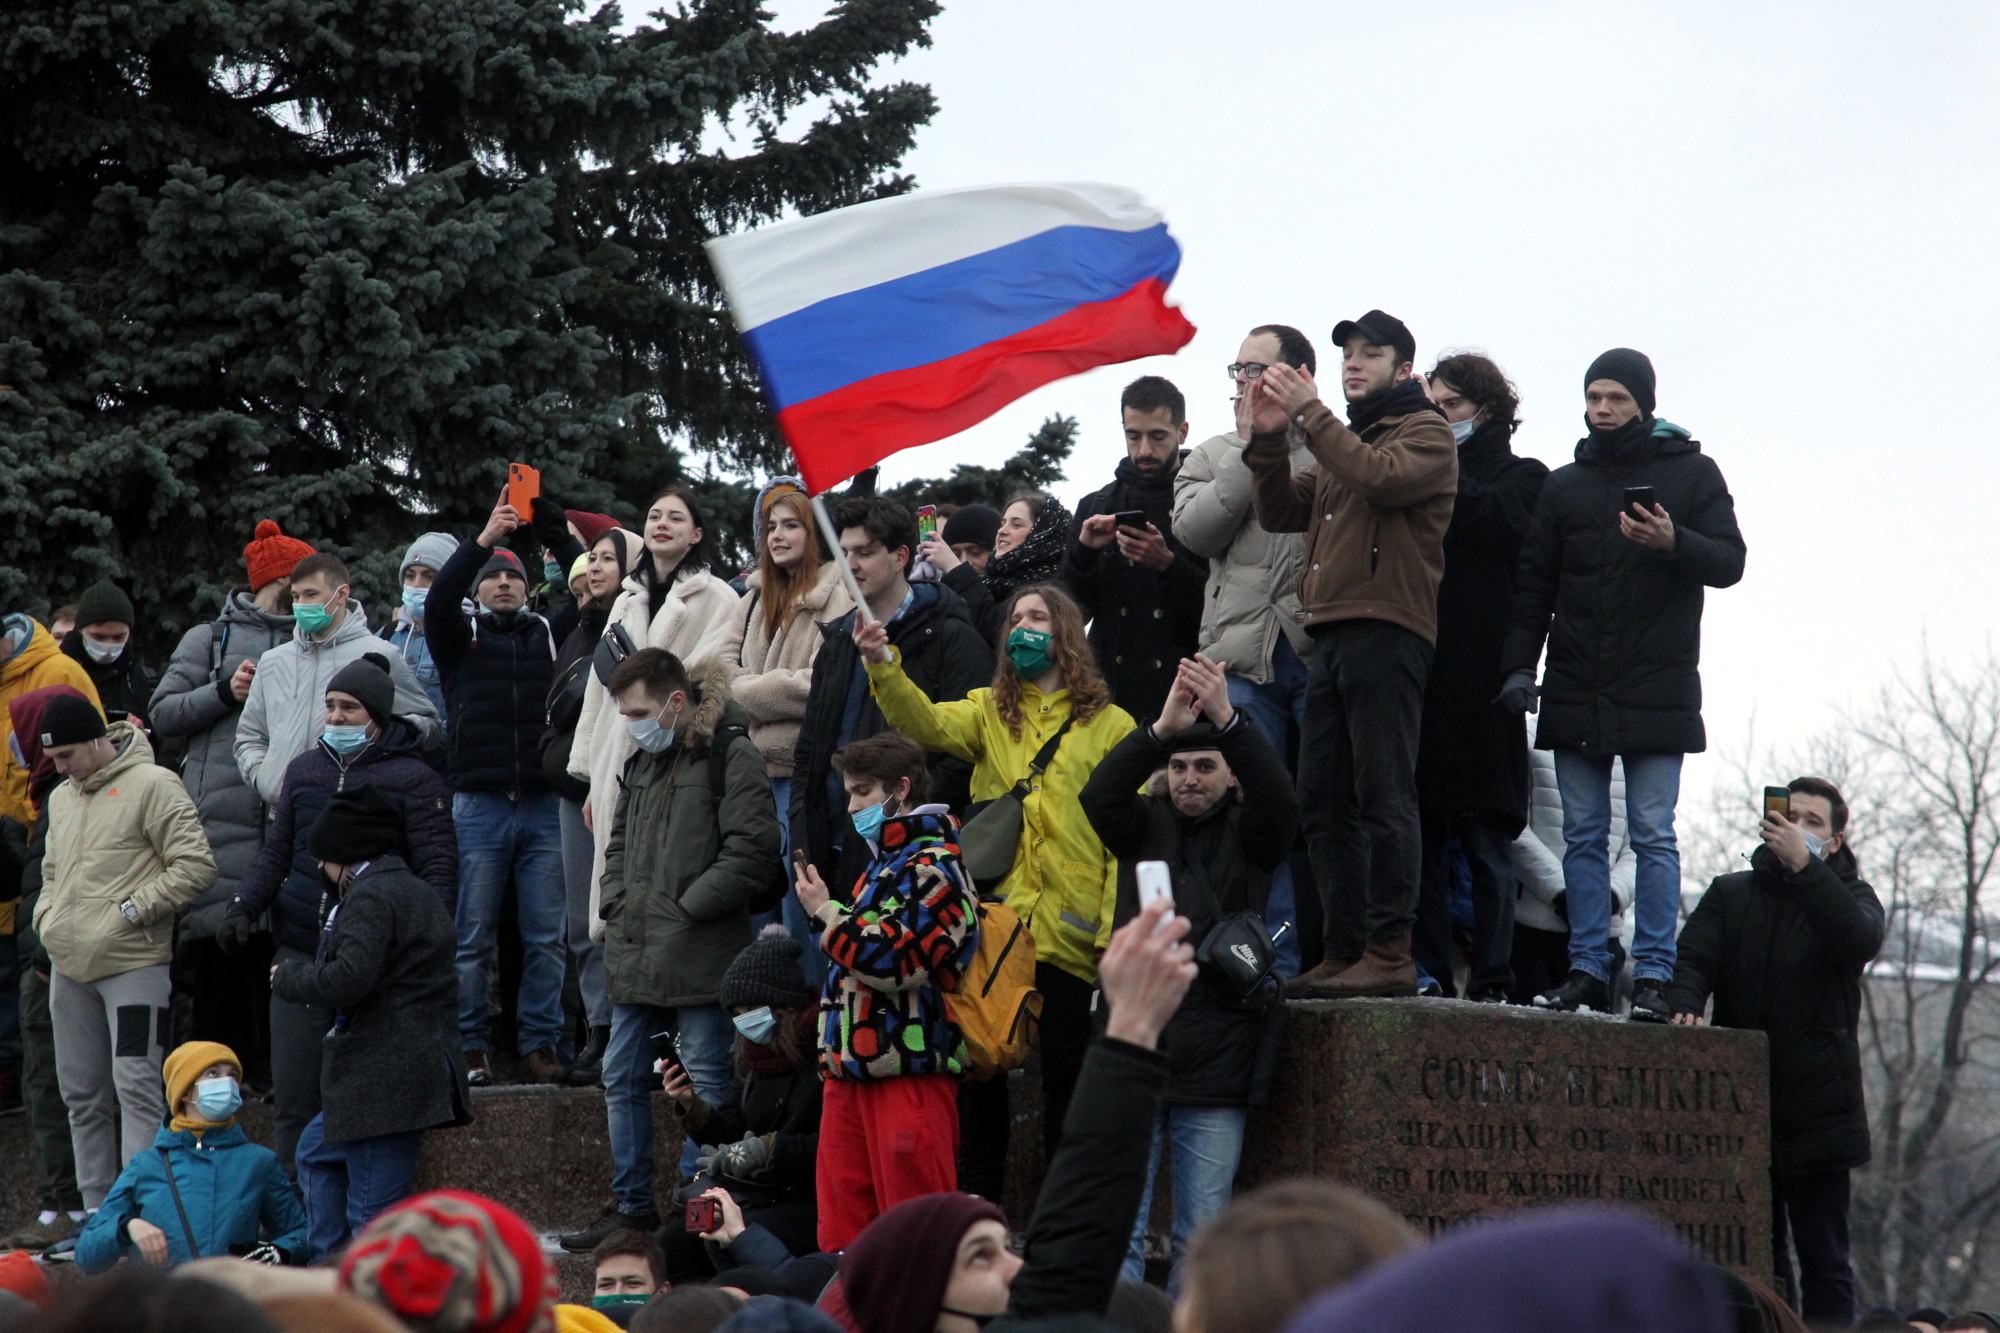 C митинг. Законный митинг. Митинги в России. Митинг Навального. Митинг в Александровском саду.